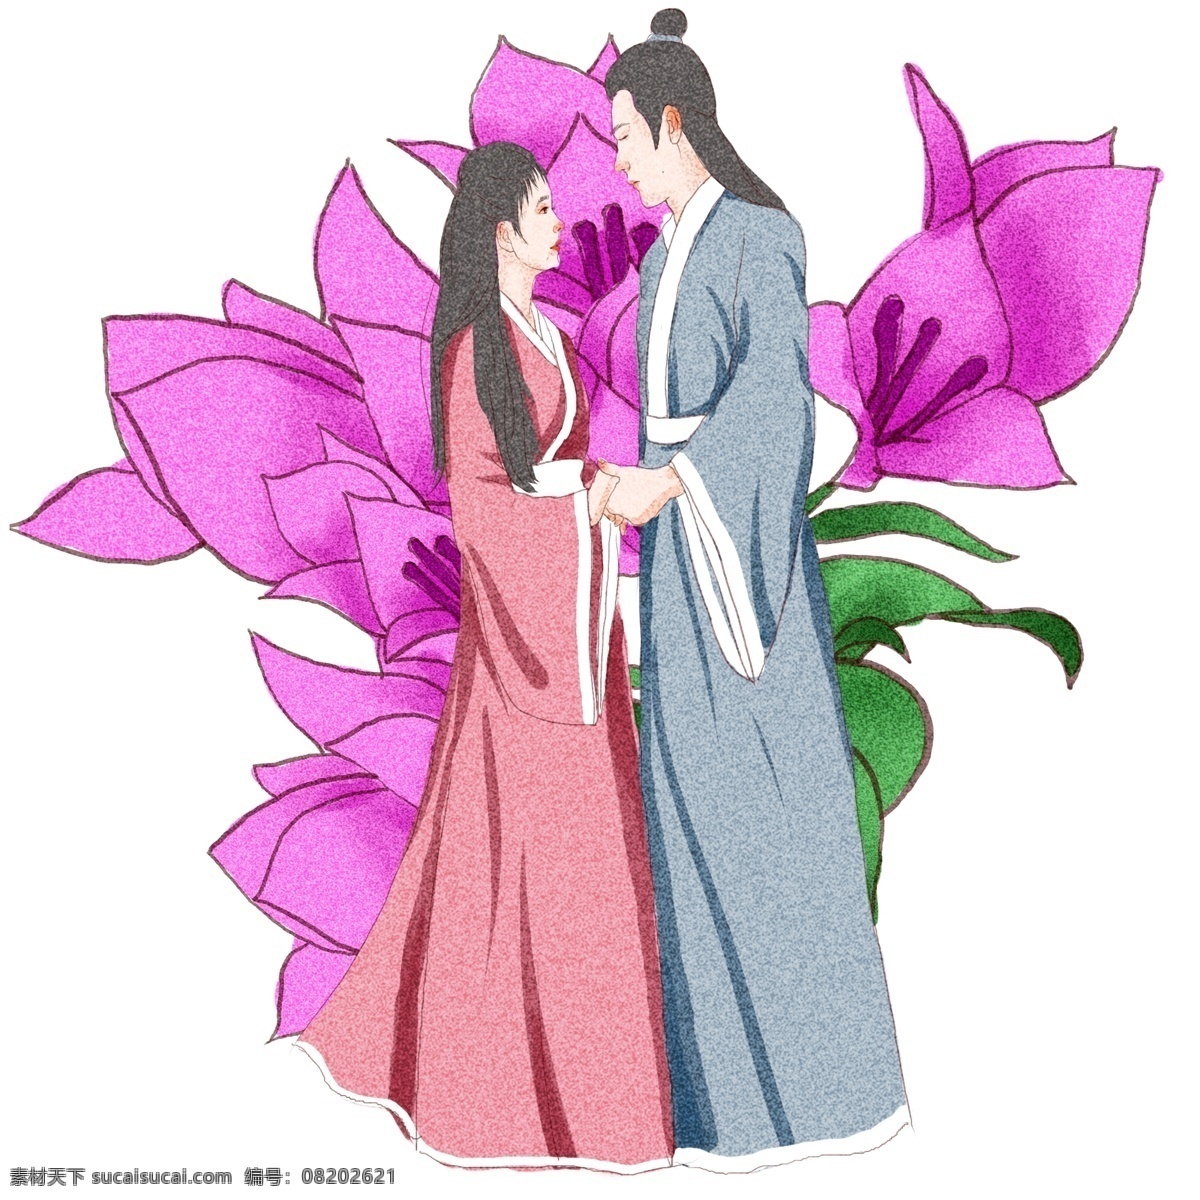 七夕 牛郎织女 原创 商用 元素 花朵 可爱 情人节 情侣 唯美 气质 节日 爱情 浪漫 手绘 板绘 水彩